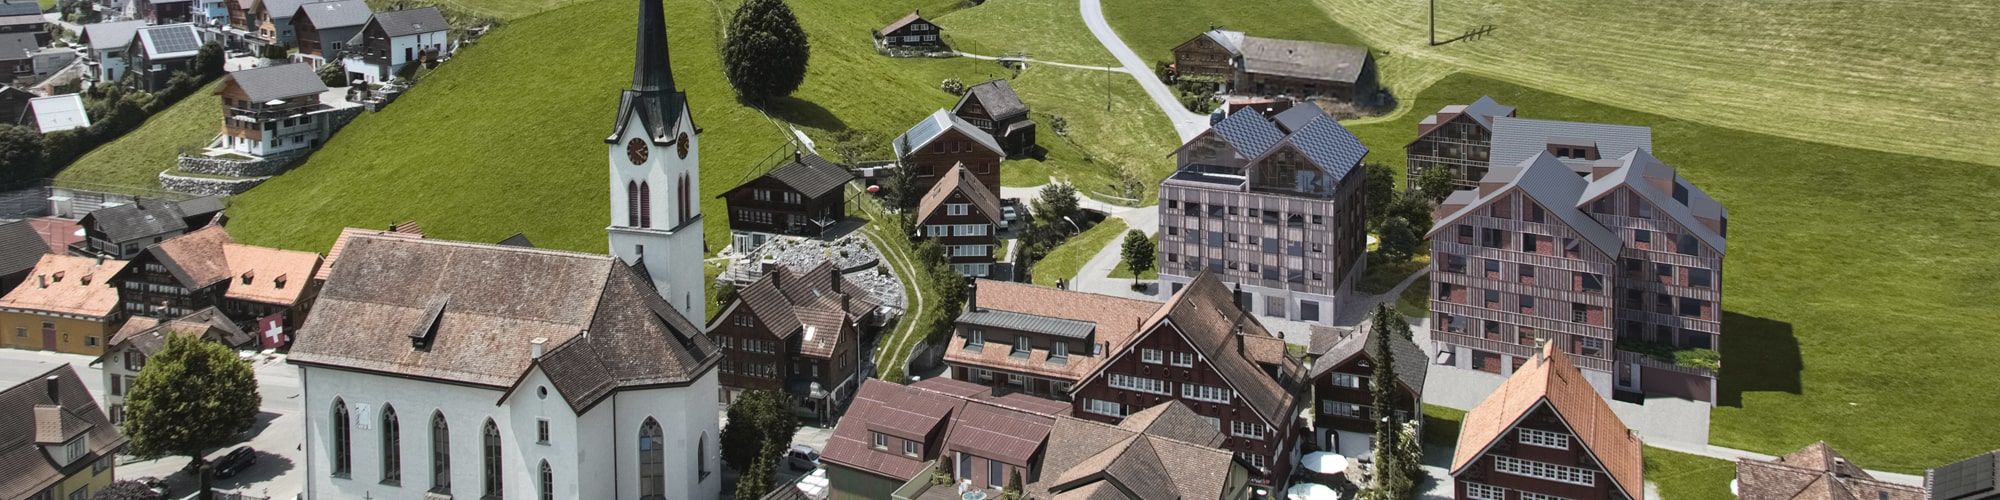 Umbau und Neubau 7 Gebäude in Gonten Appenzell